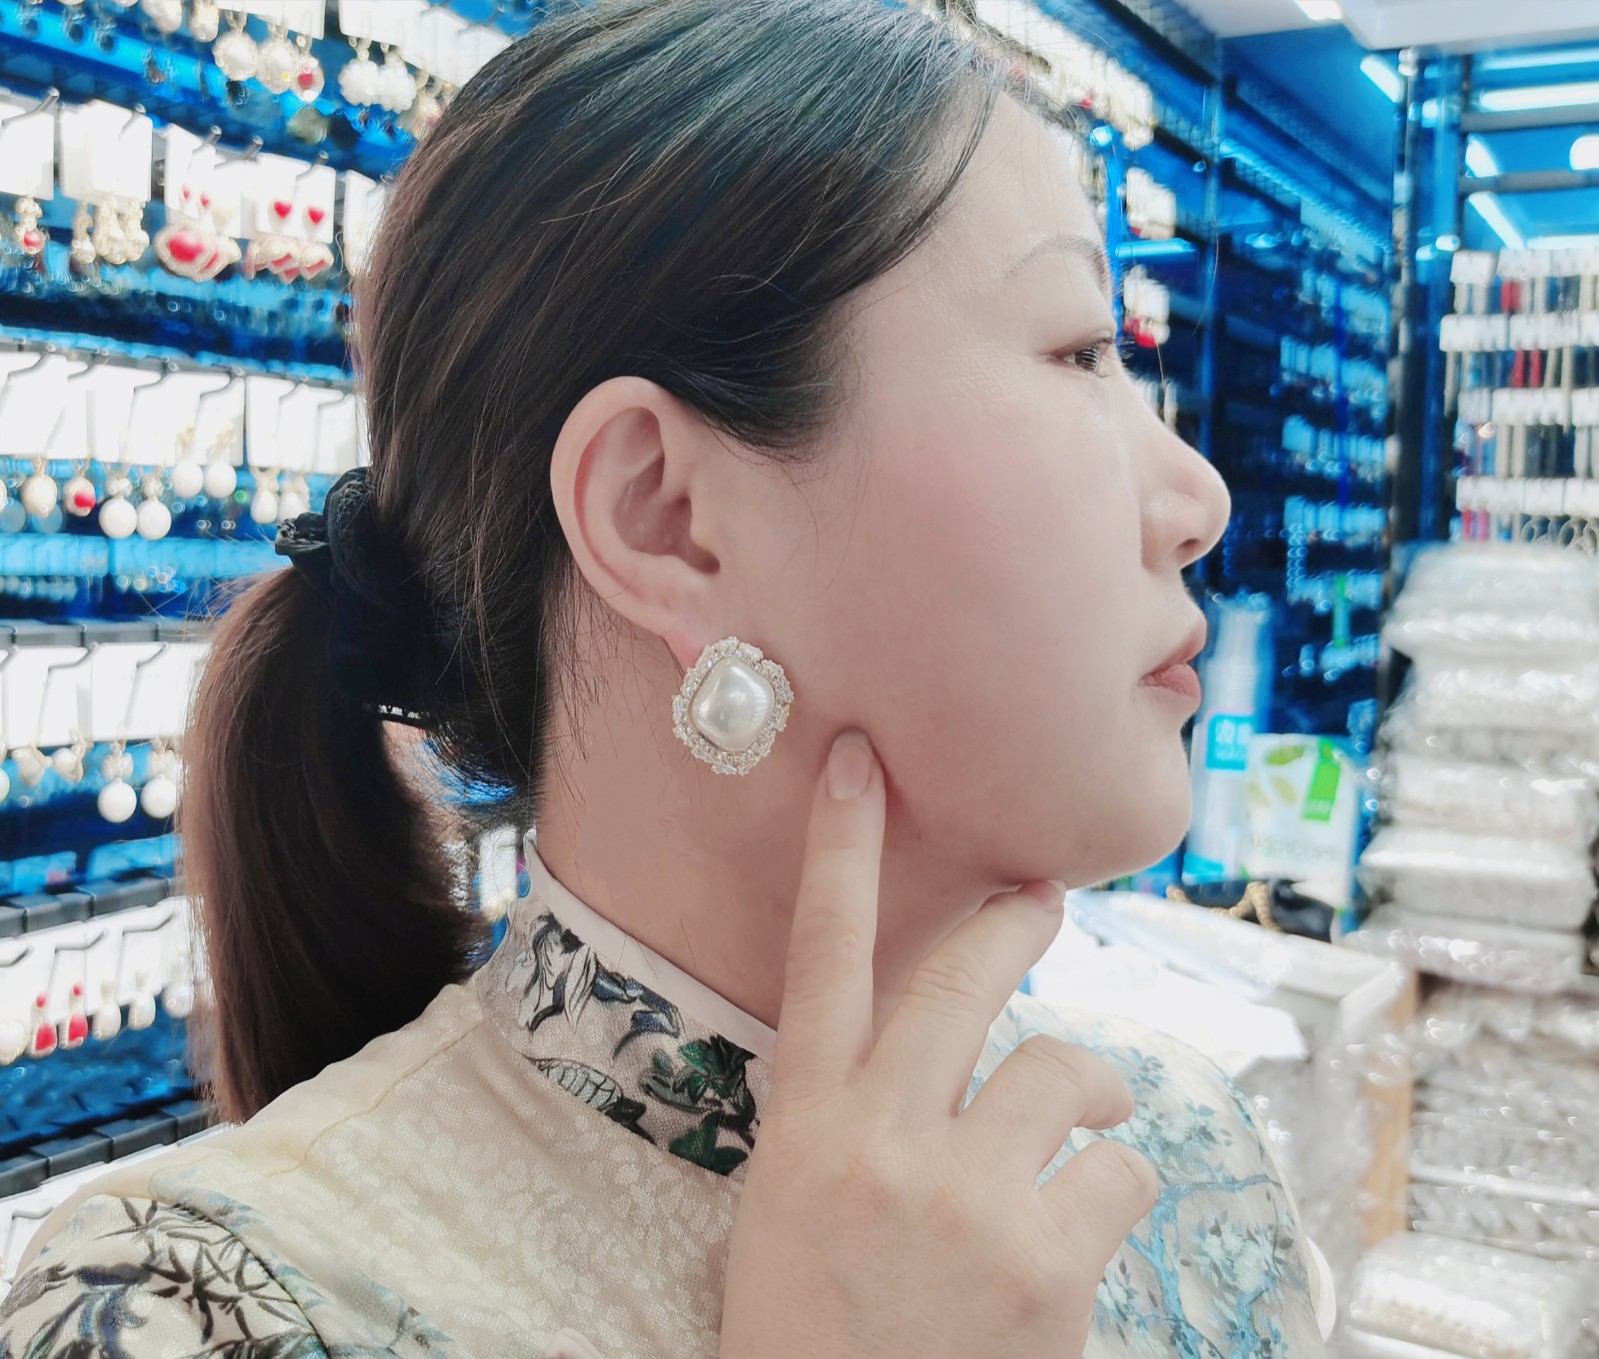 义乌市亚宁饰品厂生产销售各种高中档时尚耳环饰品